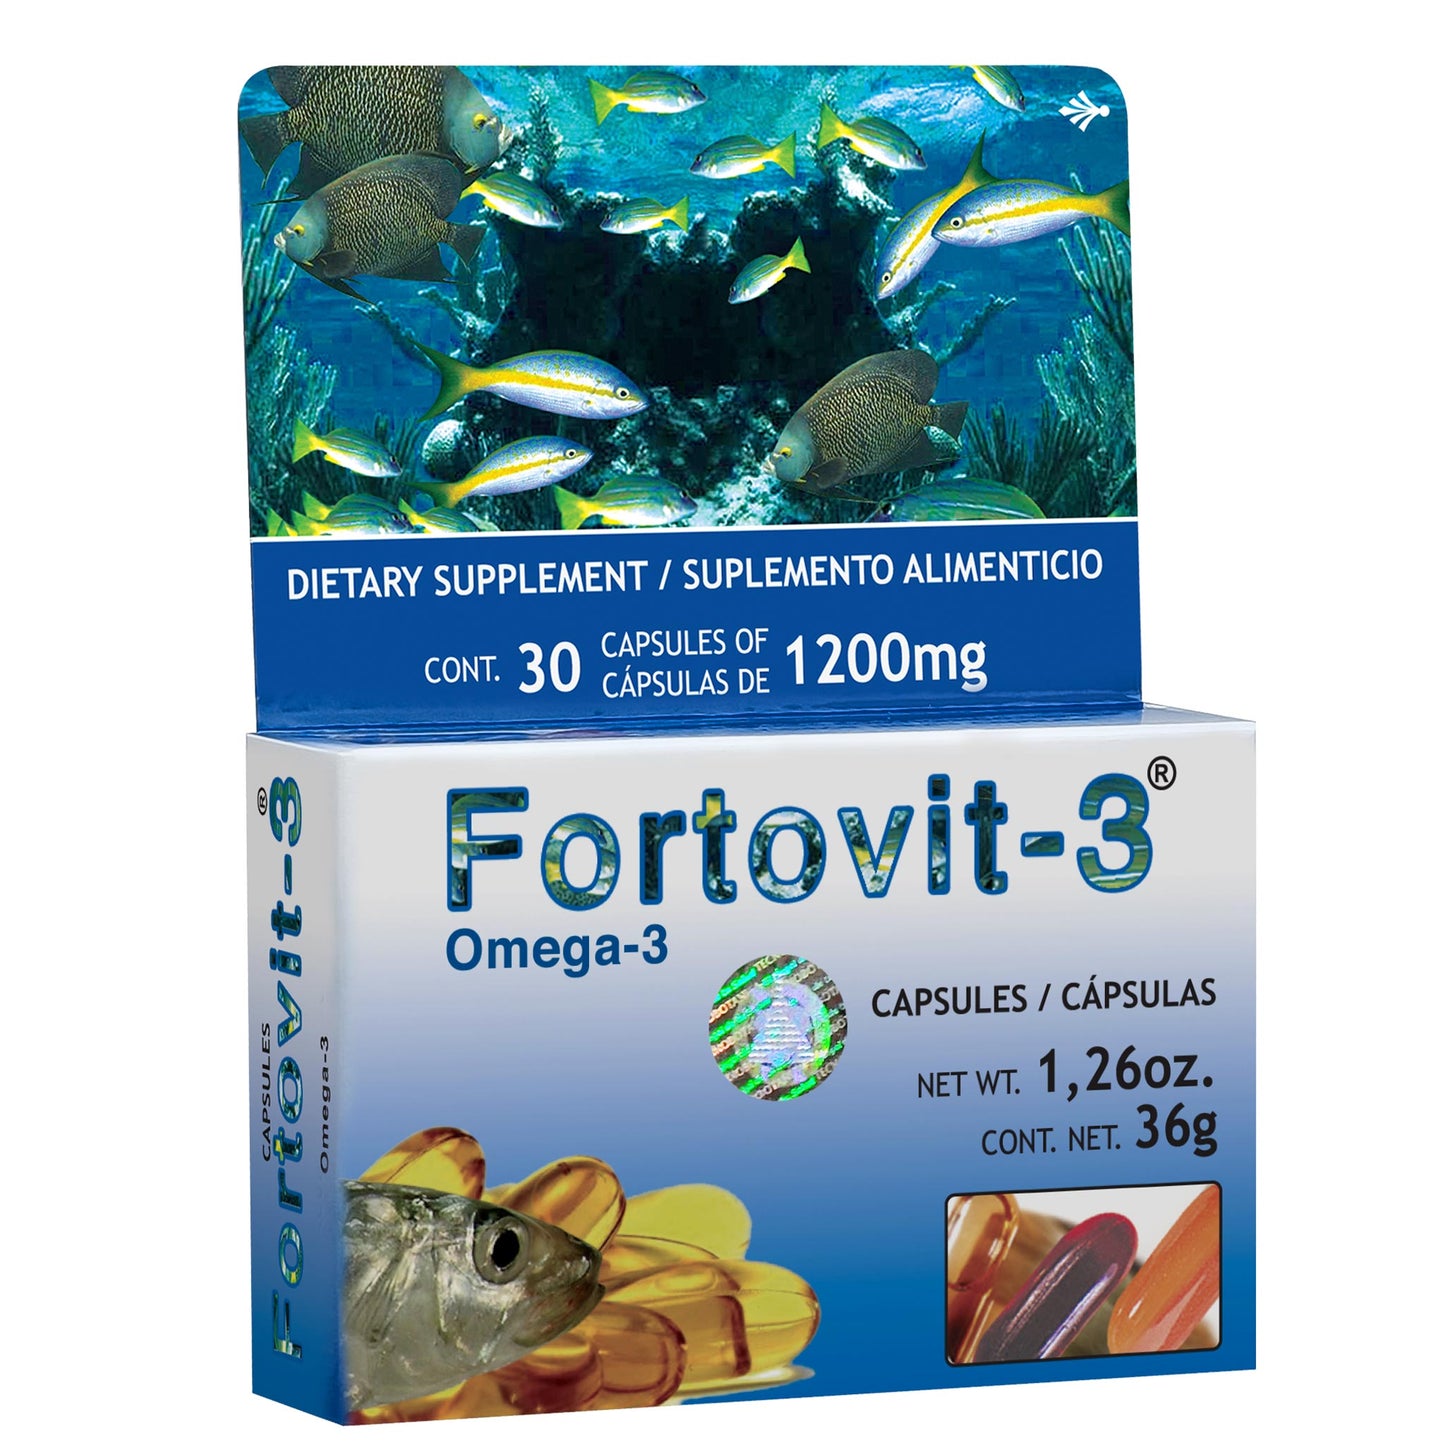 FORTOVIT-3 ® 30 cápsulas